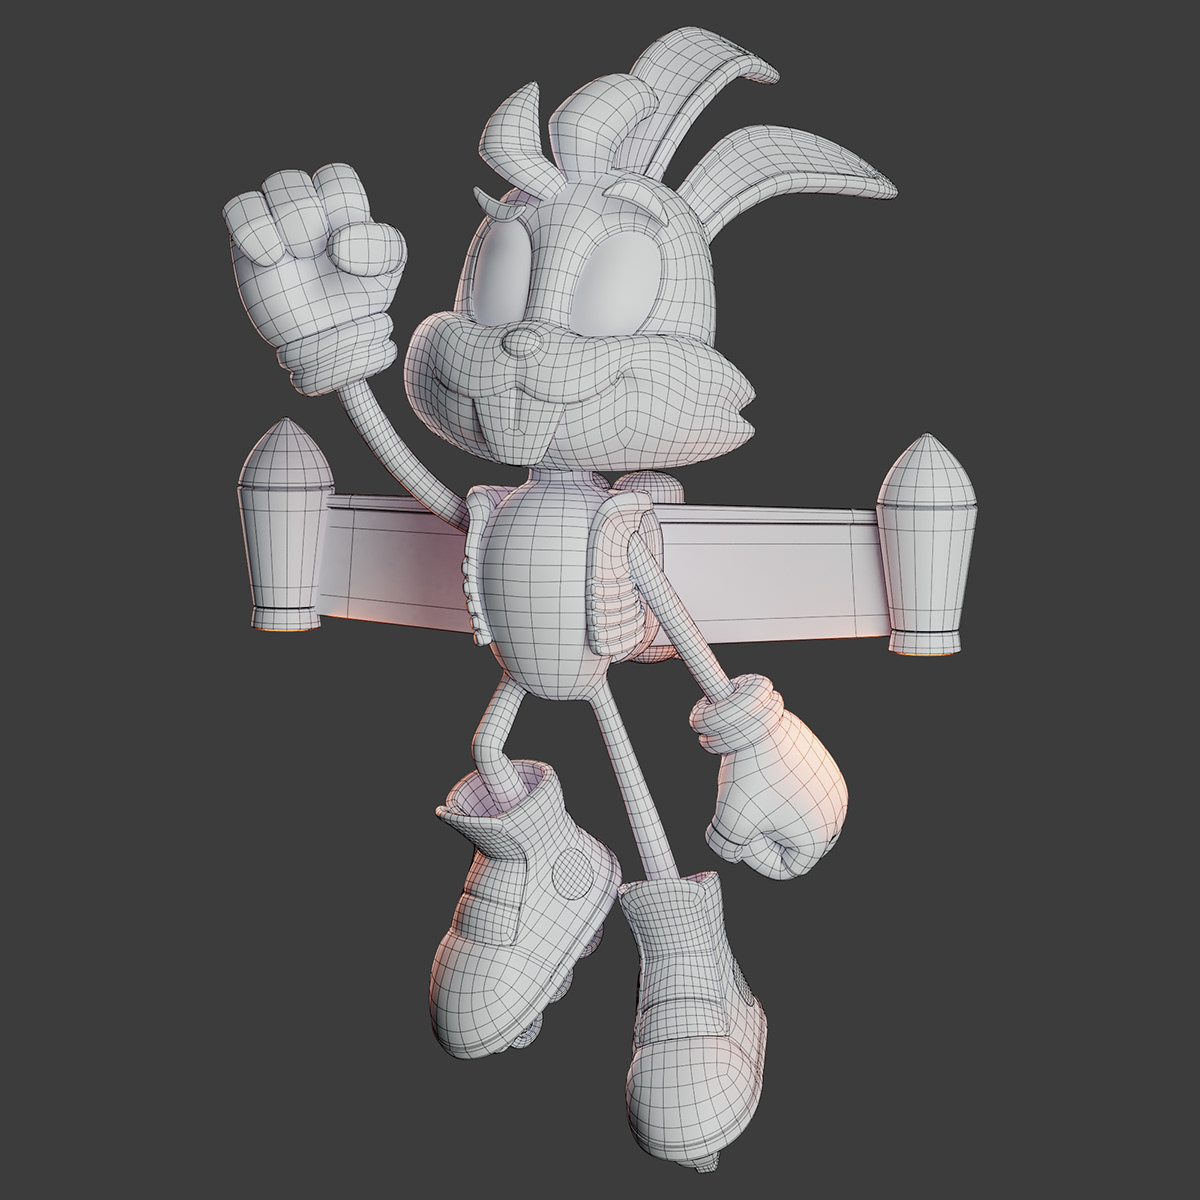 3D Character 3D Mascot coelho mascote 3d personagem Personagem 3D rabbit speed